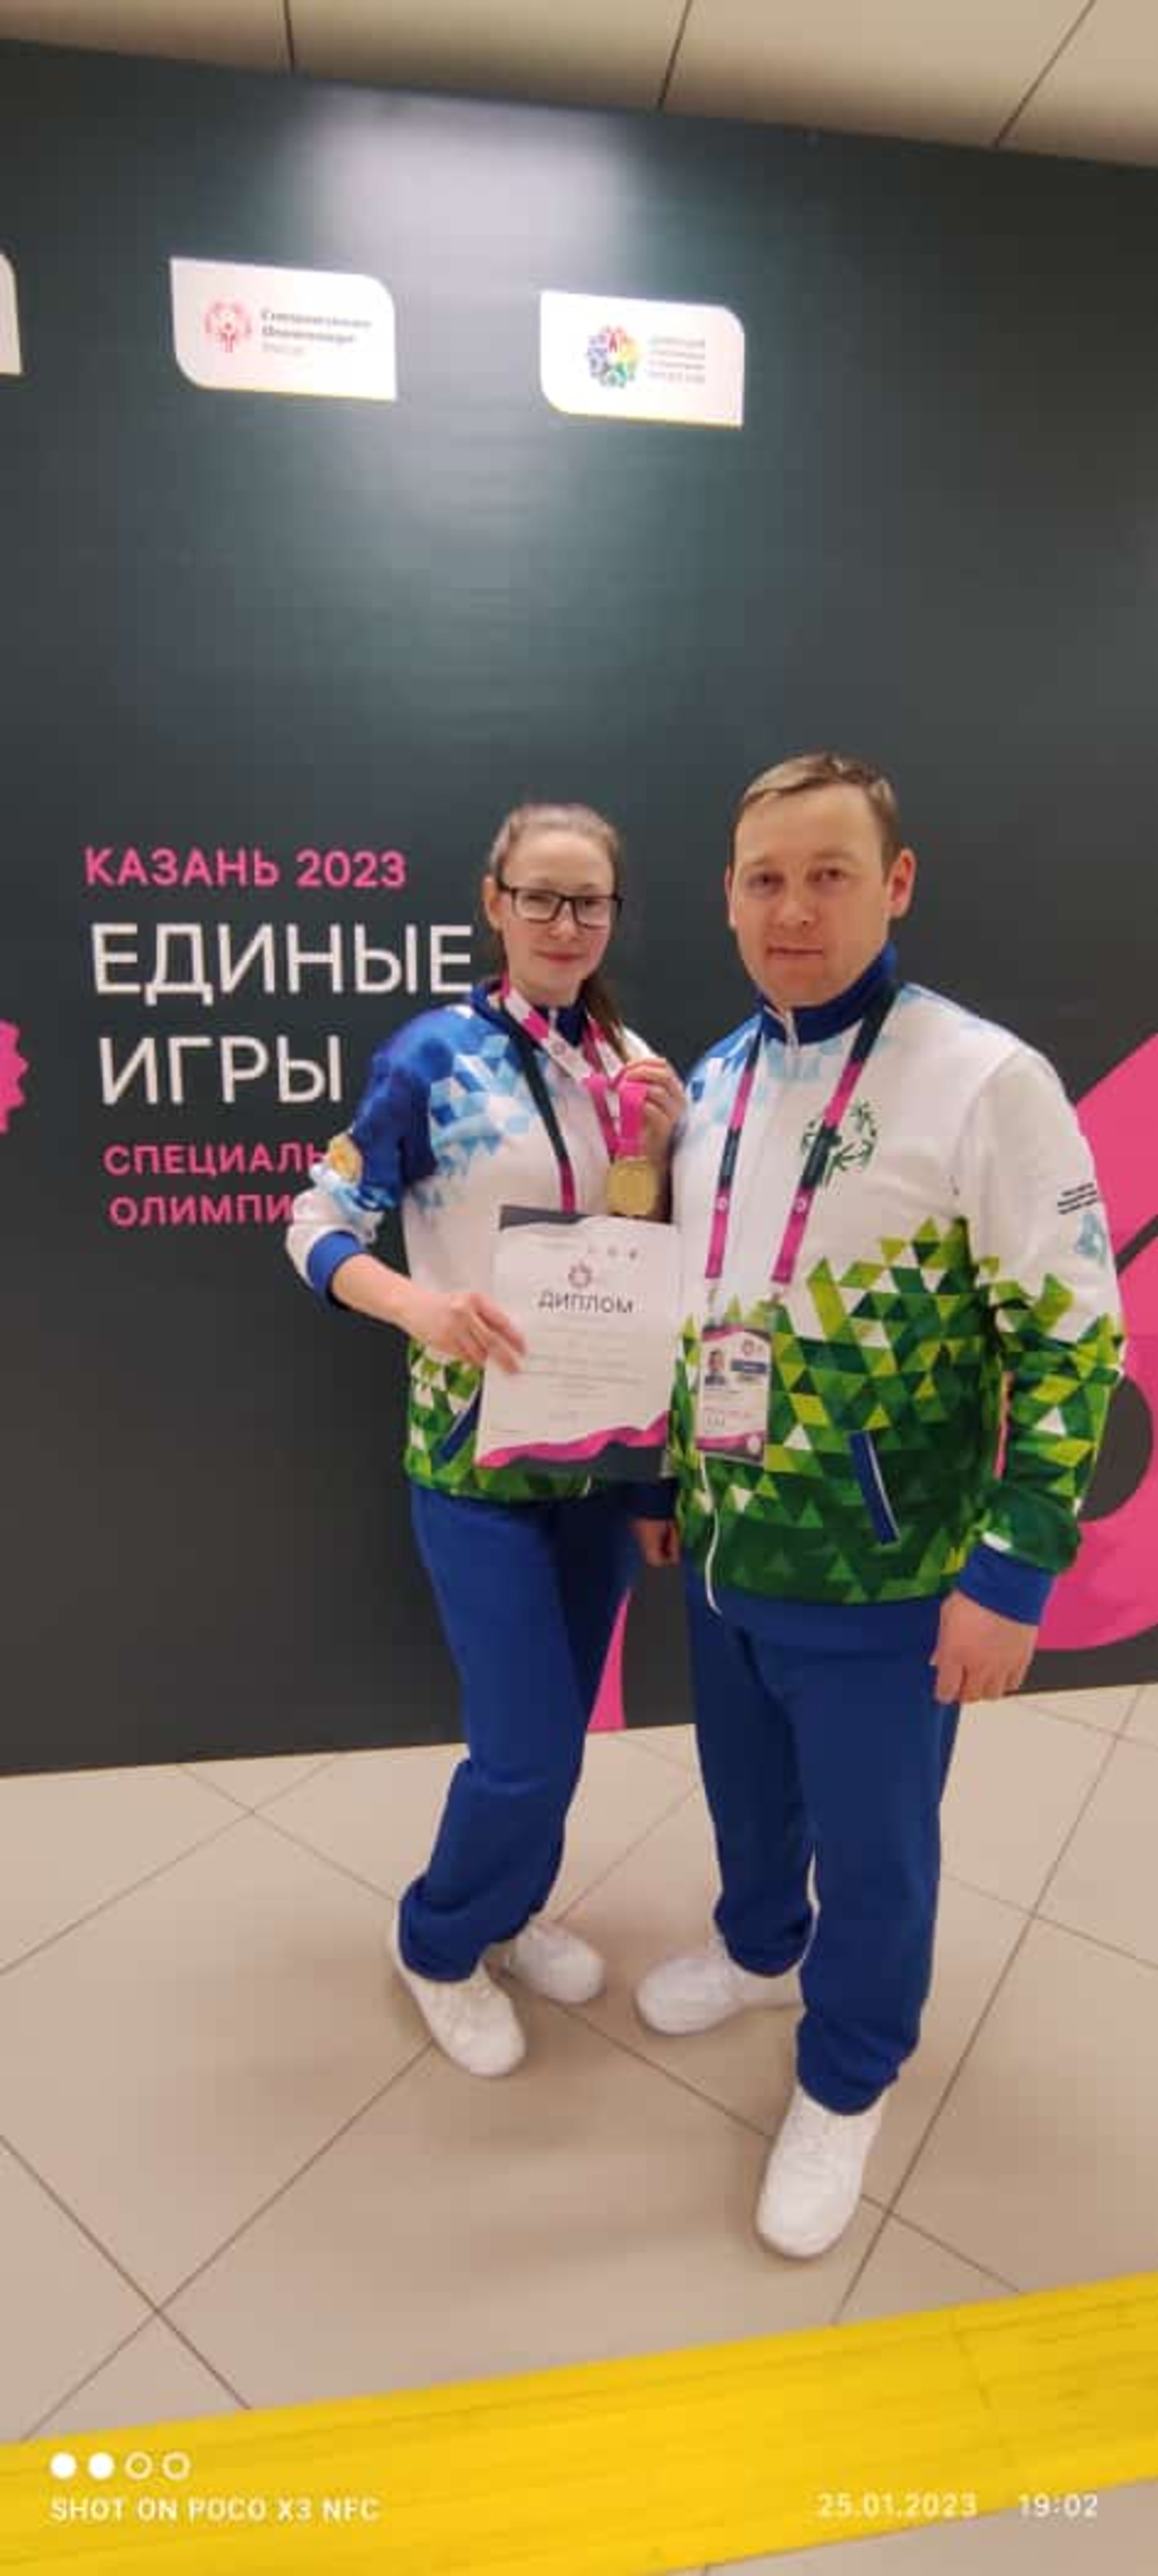 Коновалова Дарина достойно выступила в специальной олимпиаде в Казани